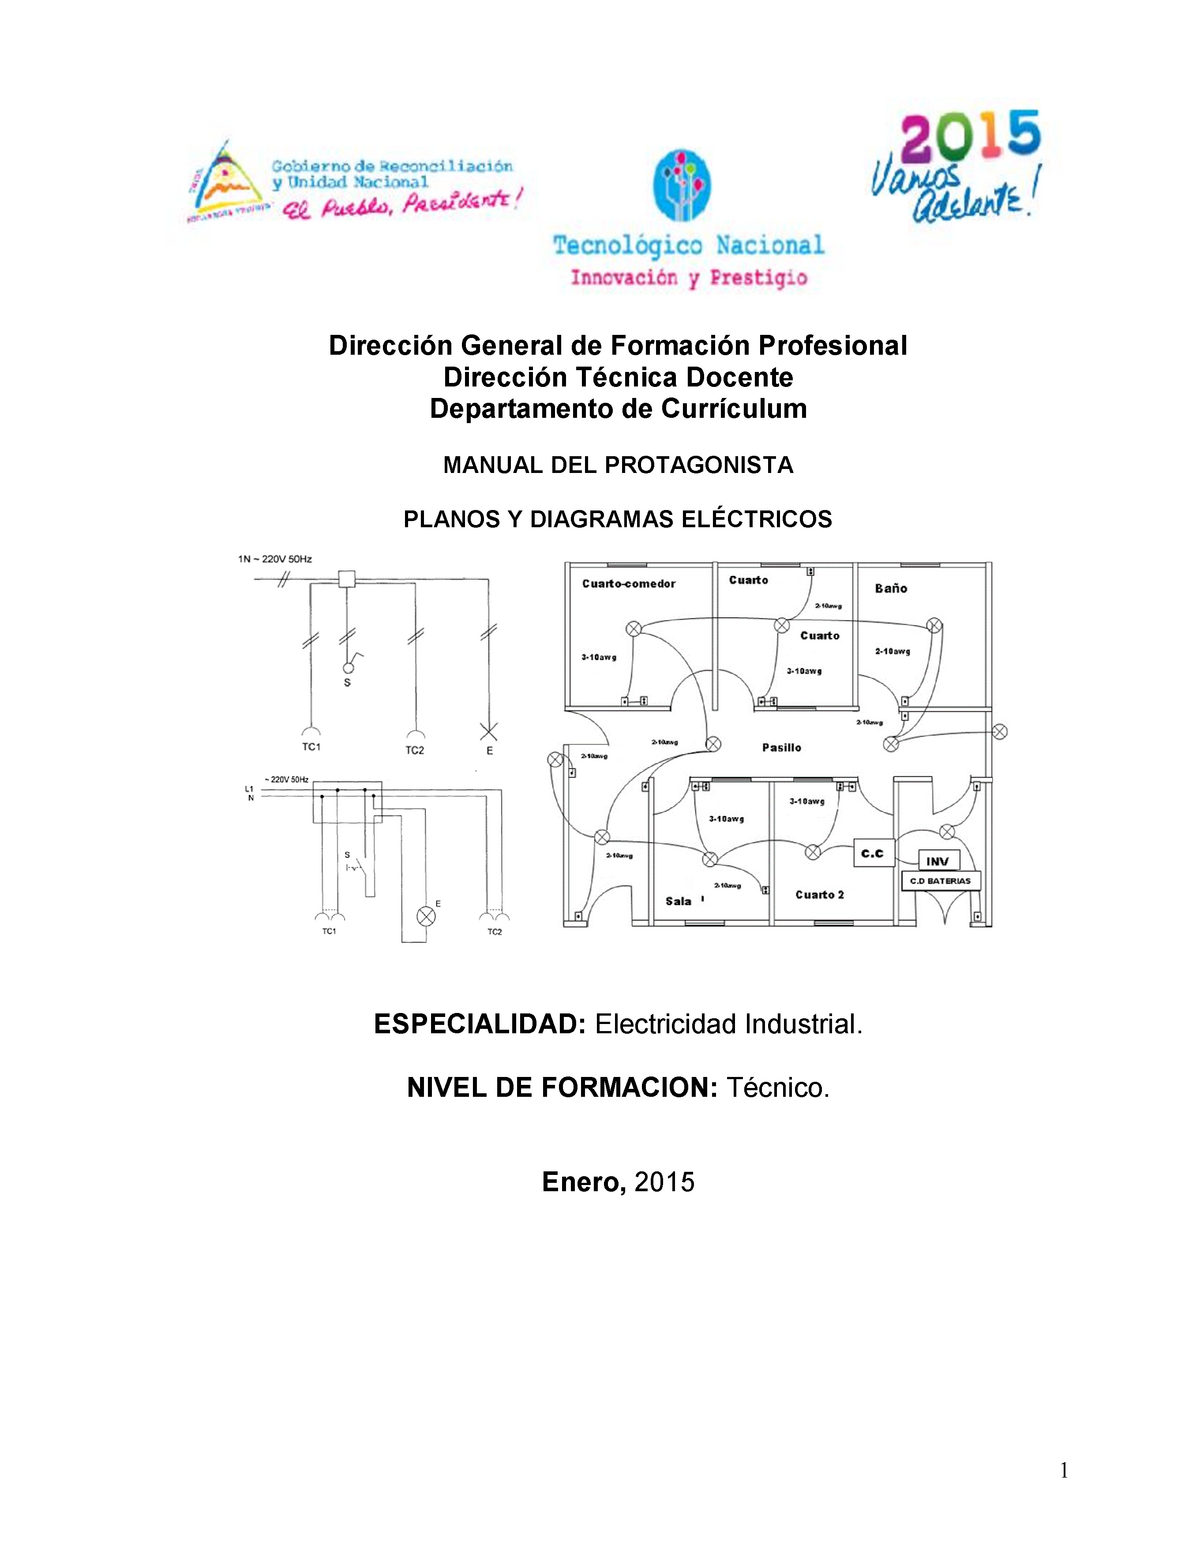 04-Manual de Planos y Diagramas Electric - Dirección General de Formación  Profesional Dirección - Studocu